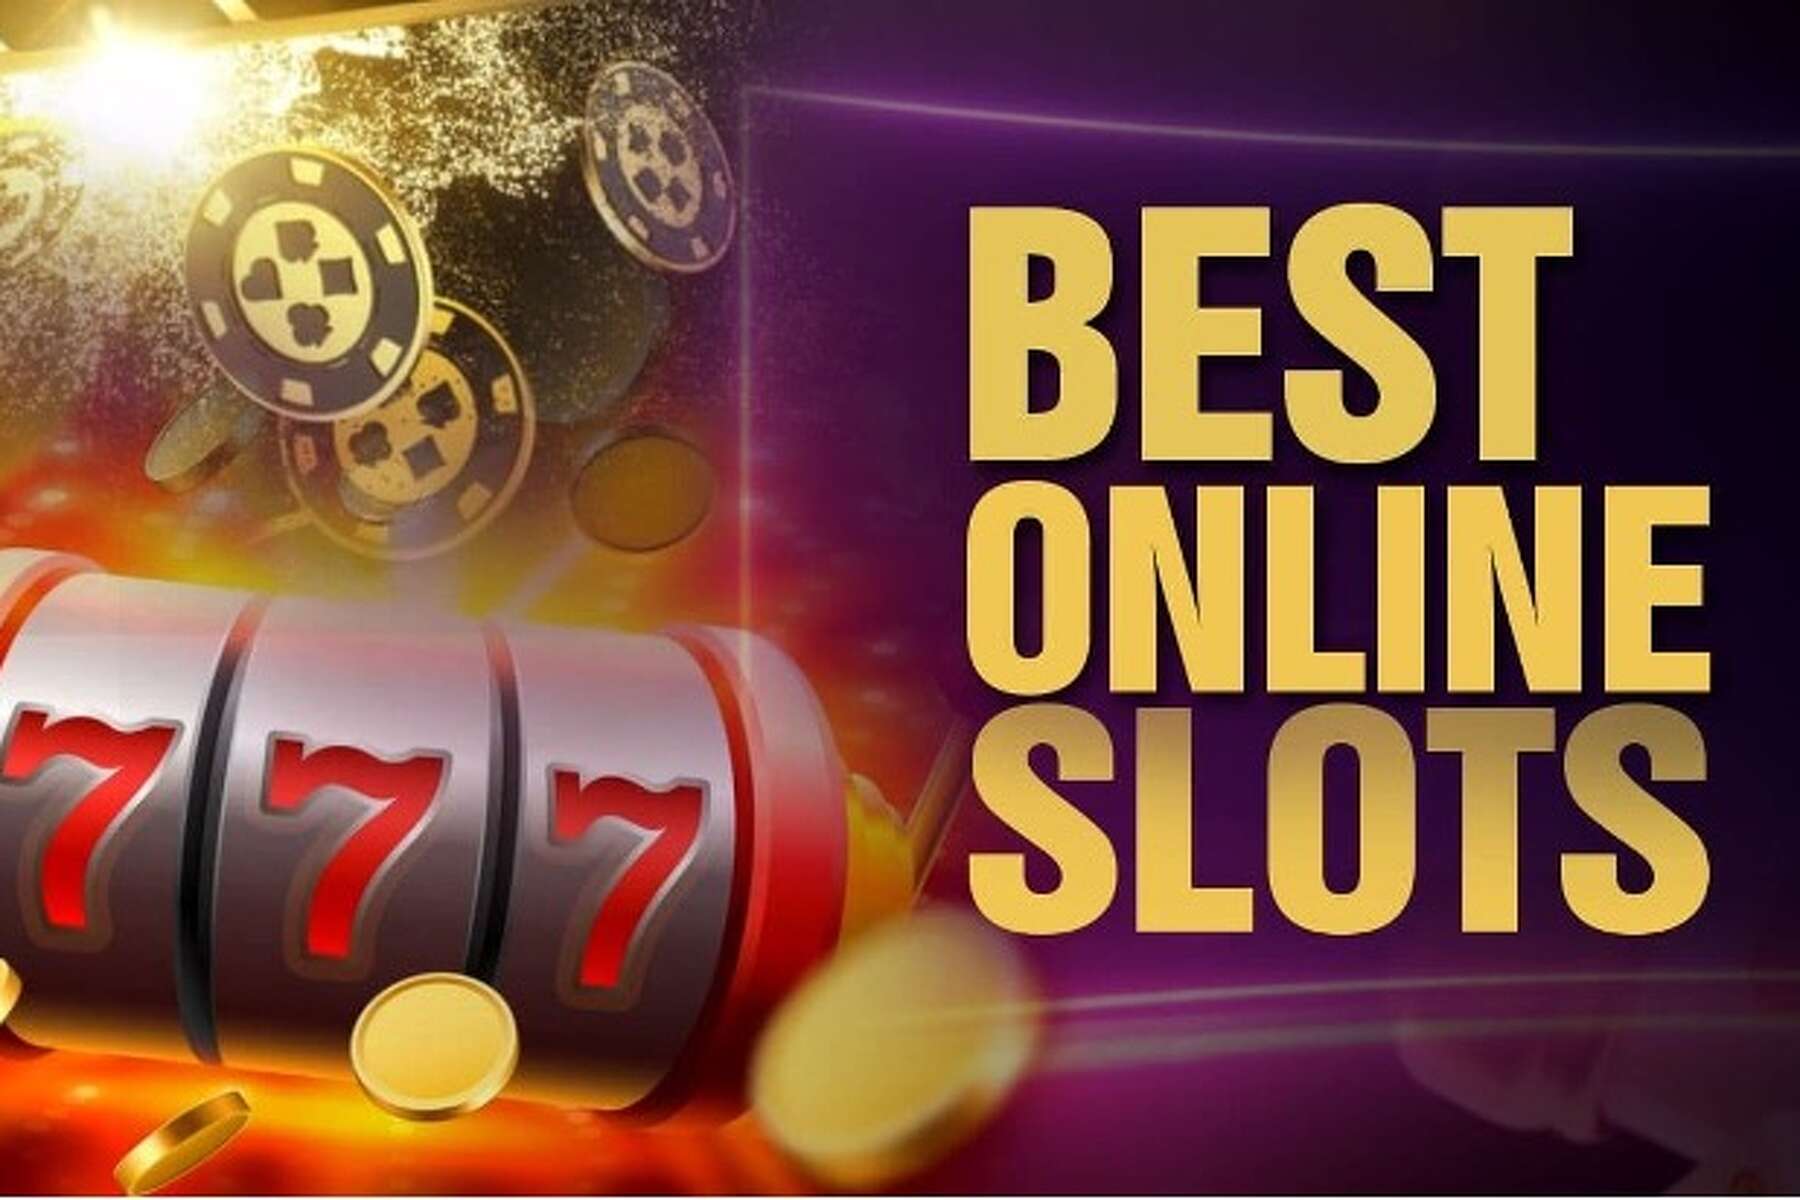 best online casinos Iphone Apps